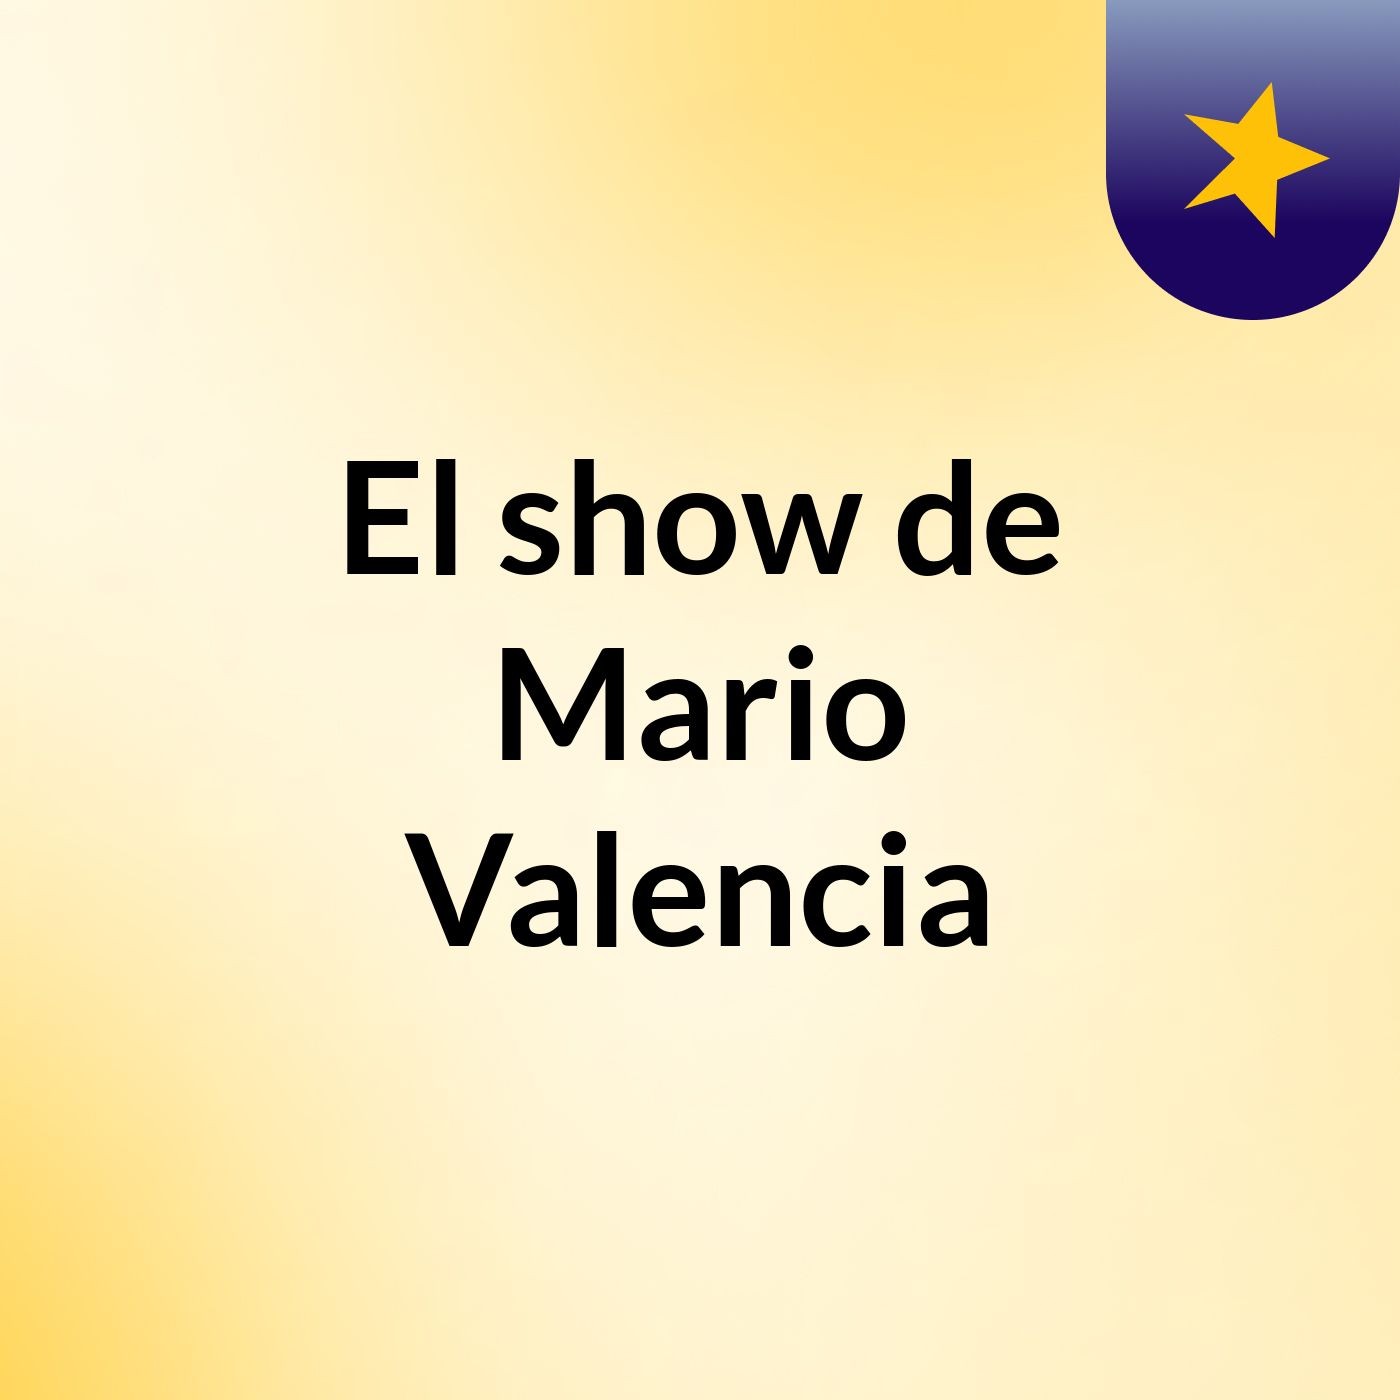 El show de Mario Valencia